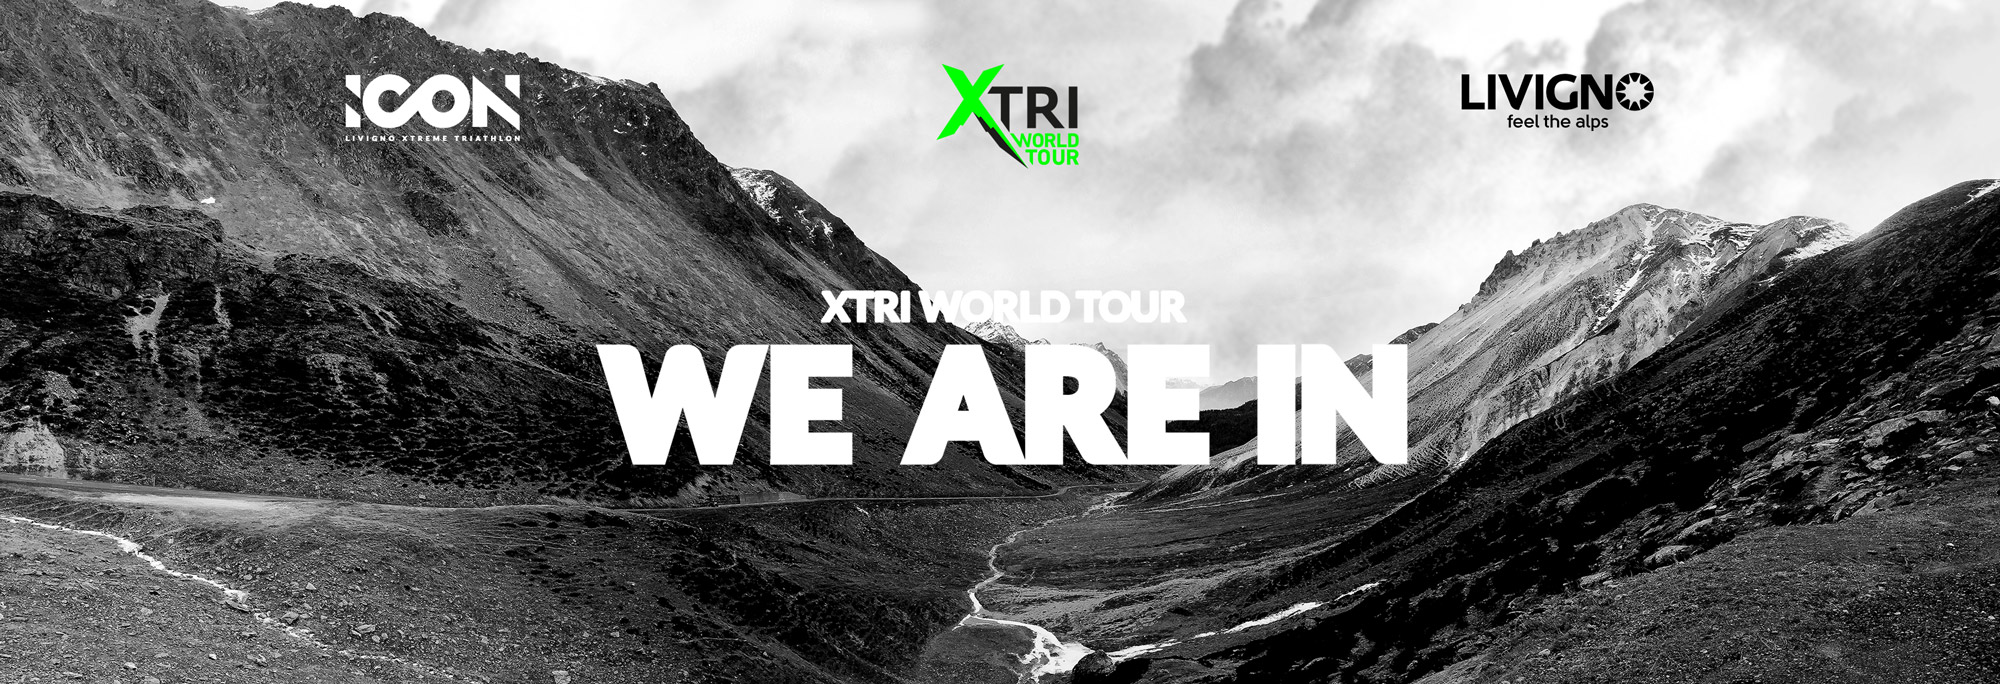 ICON entra ufficialmente in Xtri World Tour